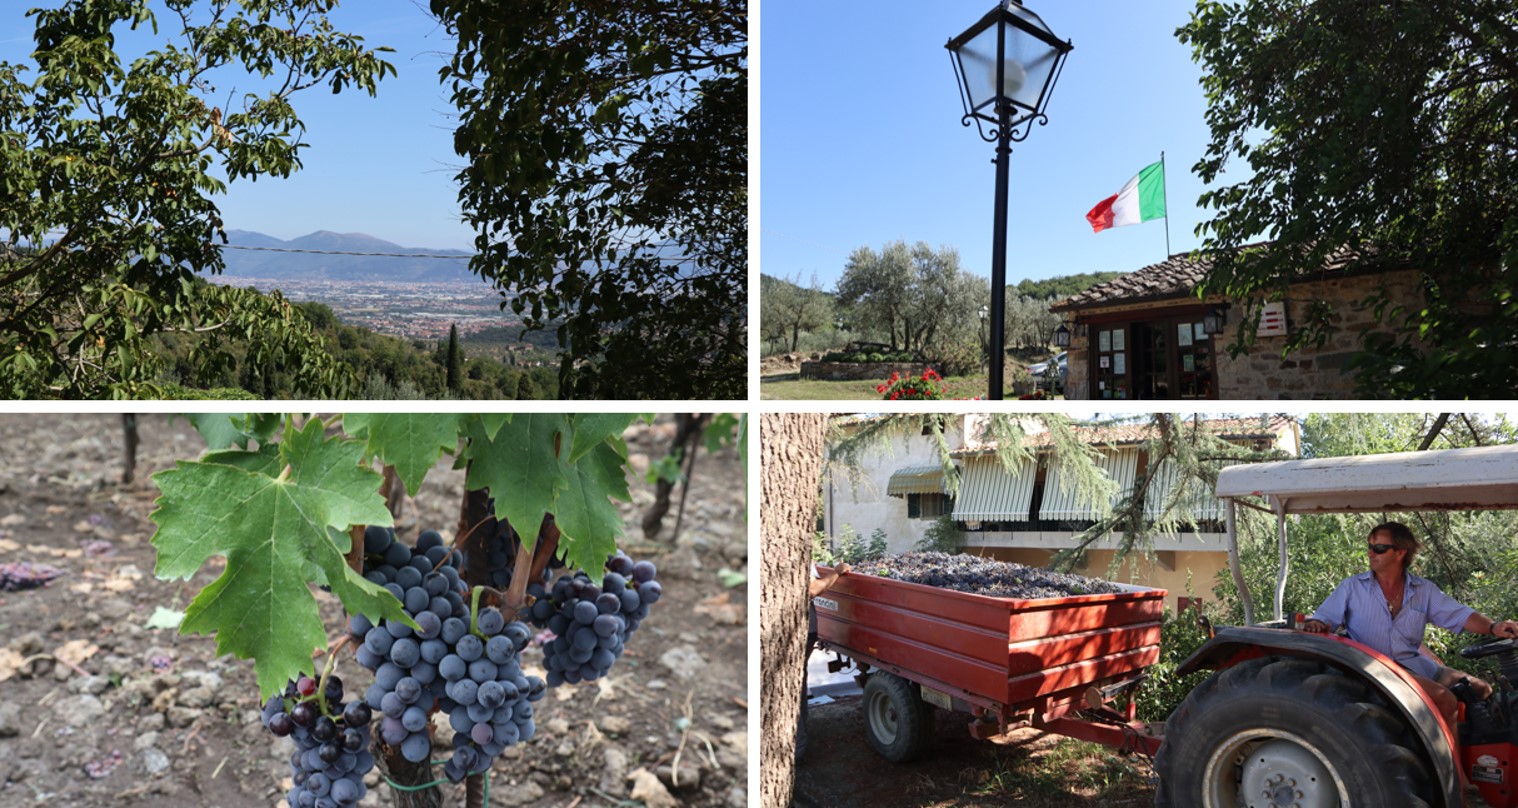 ９月初旬に訪れたシチリアとトスカーナのワイナリー。少し早めにブドウの収穫を迎えるワイナリーもあり、実りの秋を実感する。